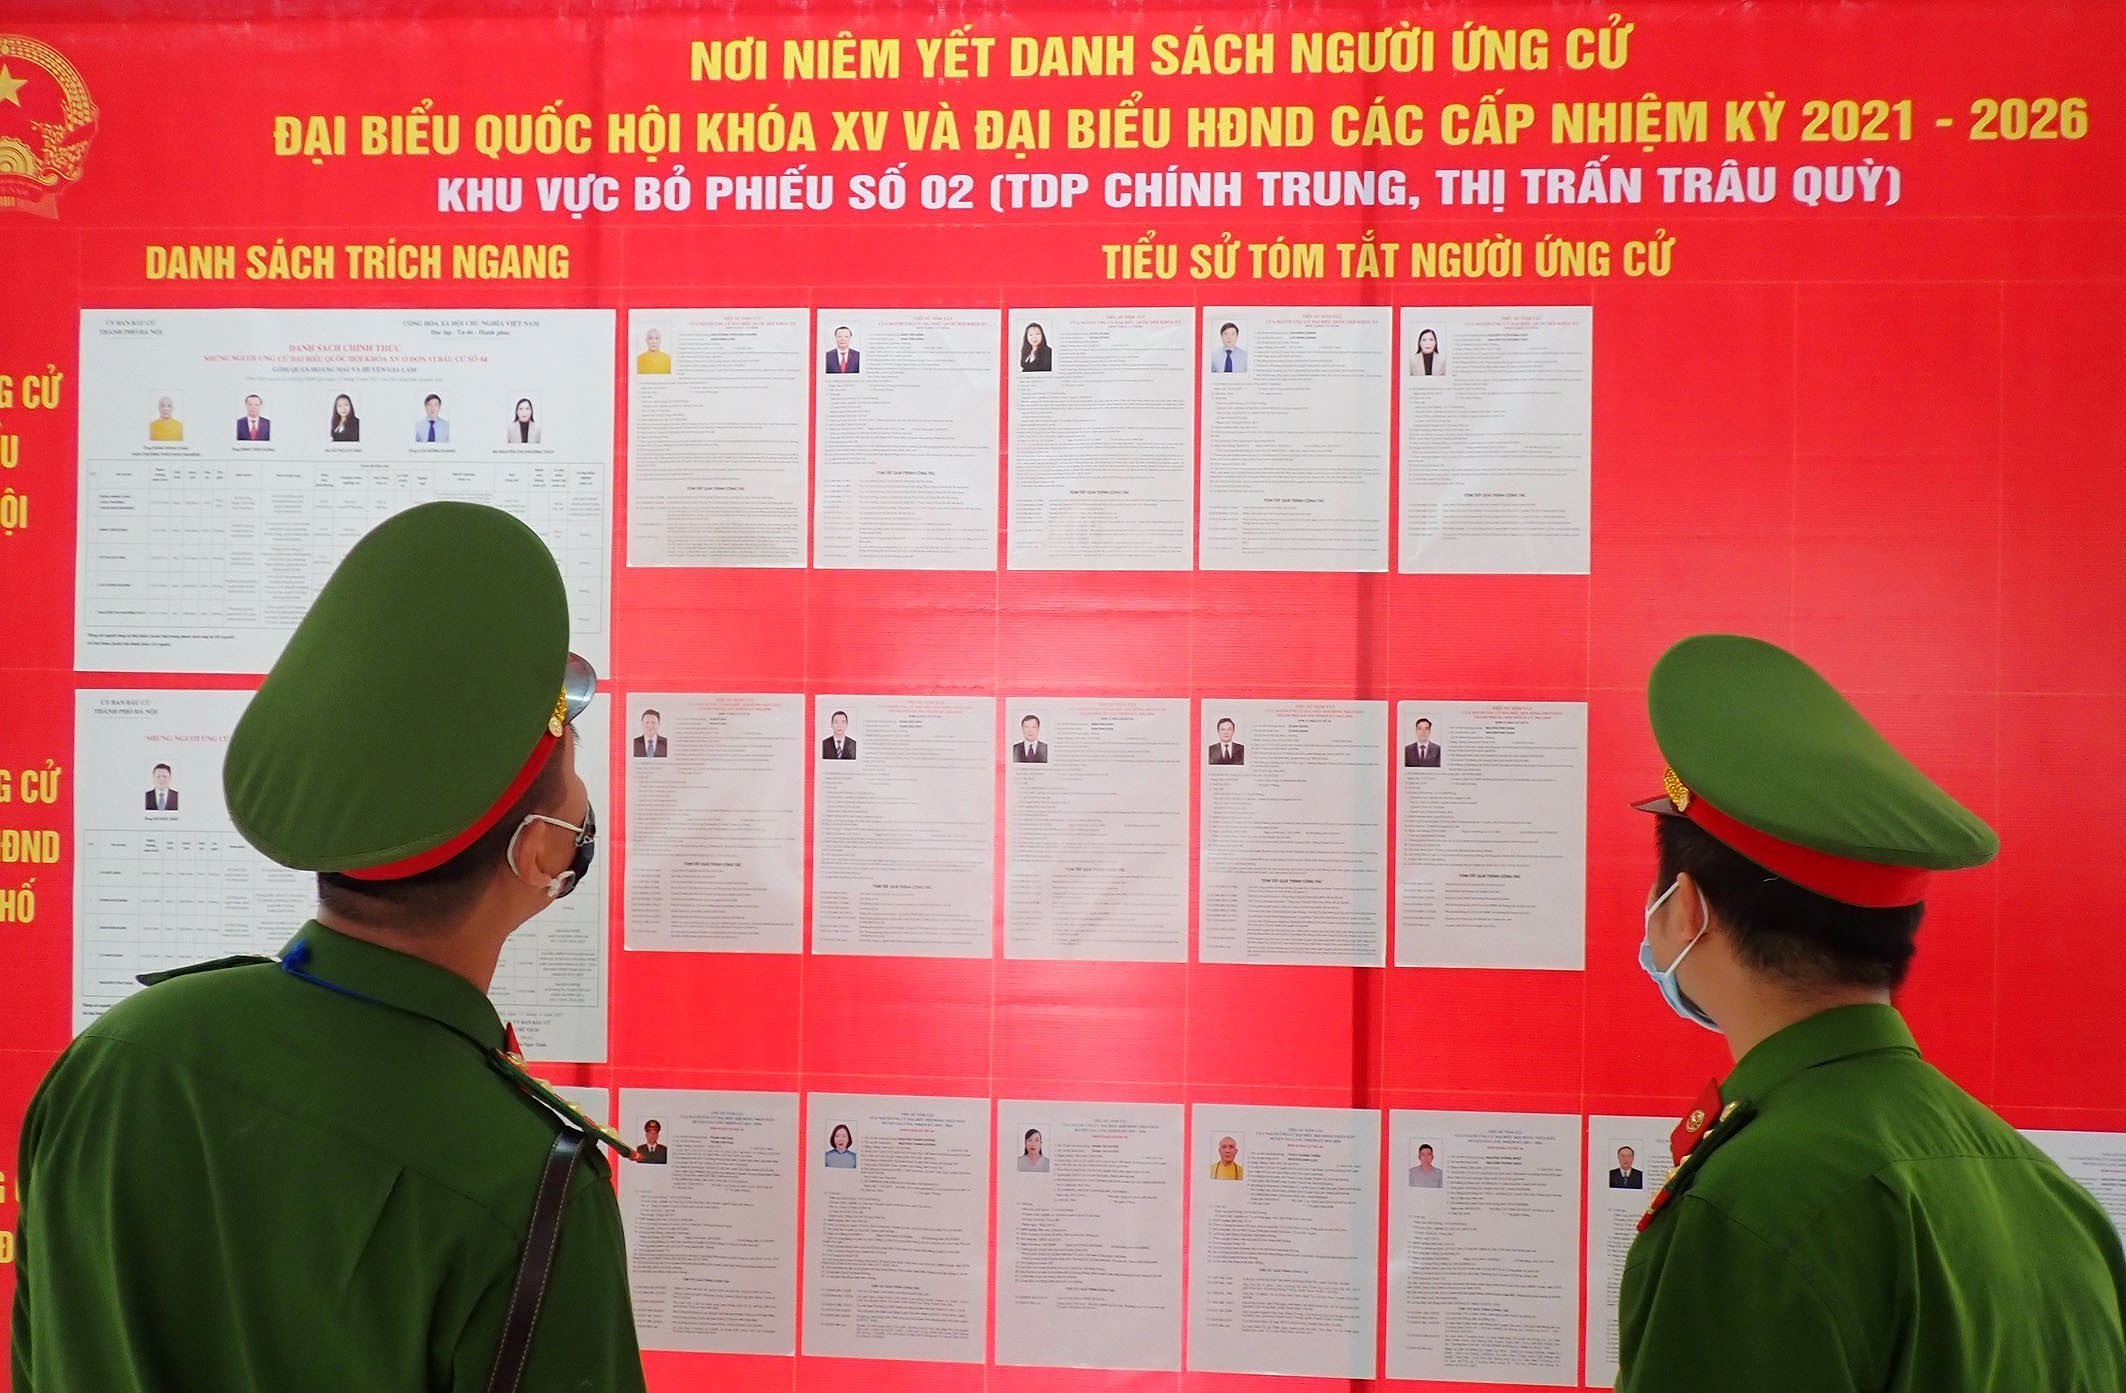 La police de Hanoi assurera la securite pour les prochaines elections legislatives hinh anh 4